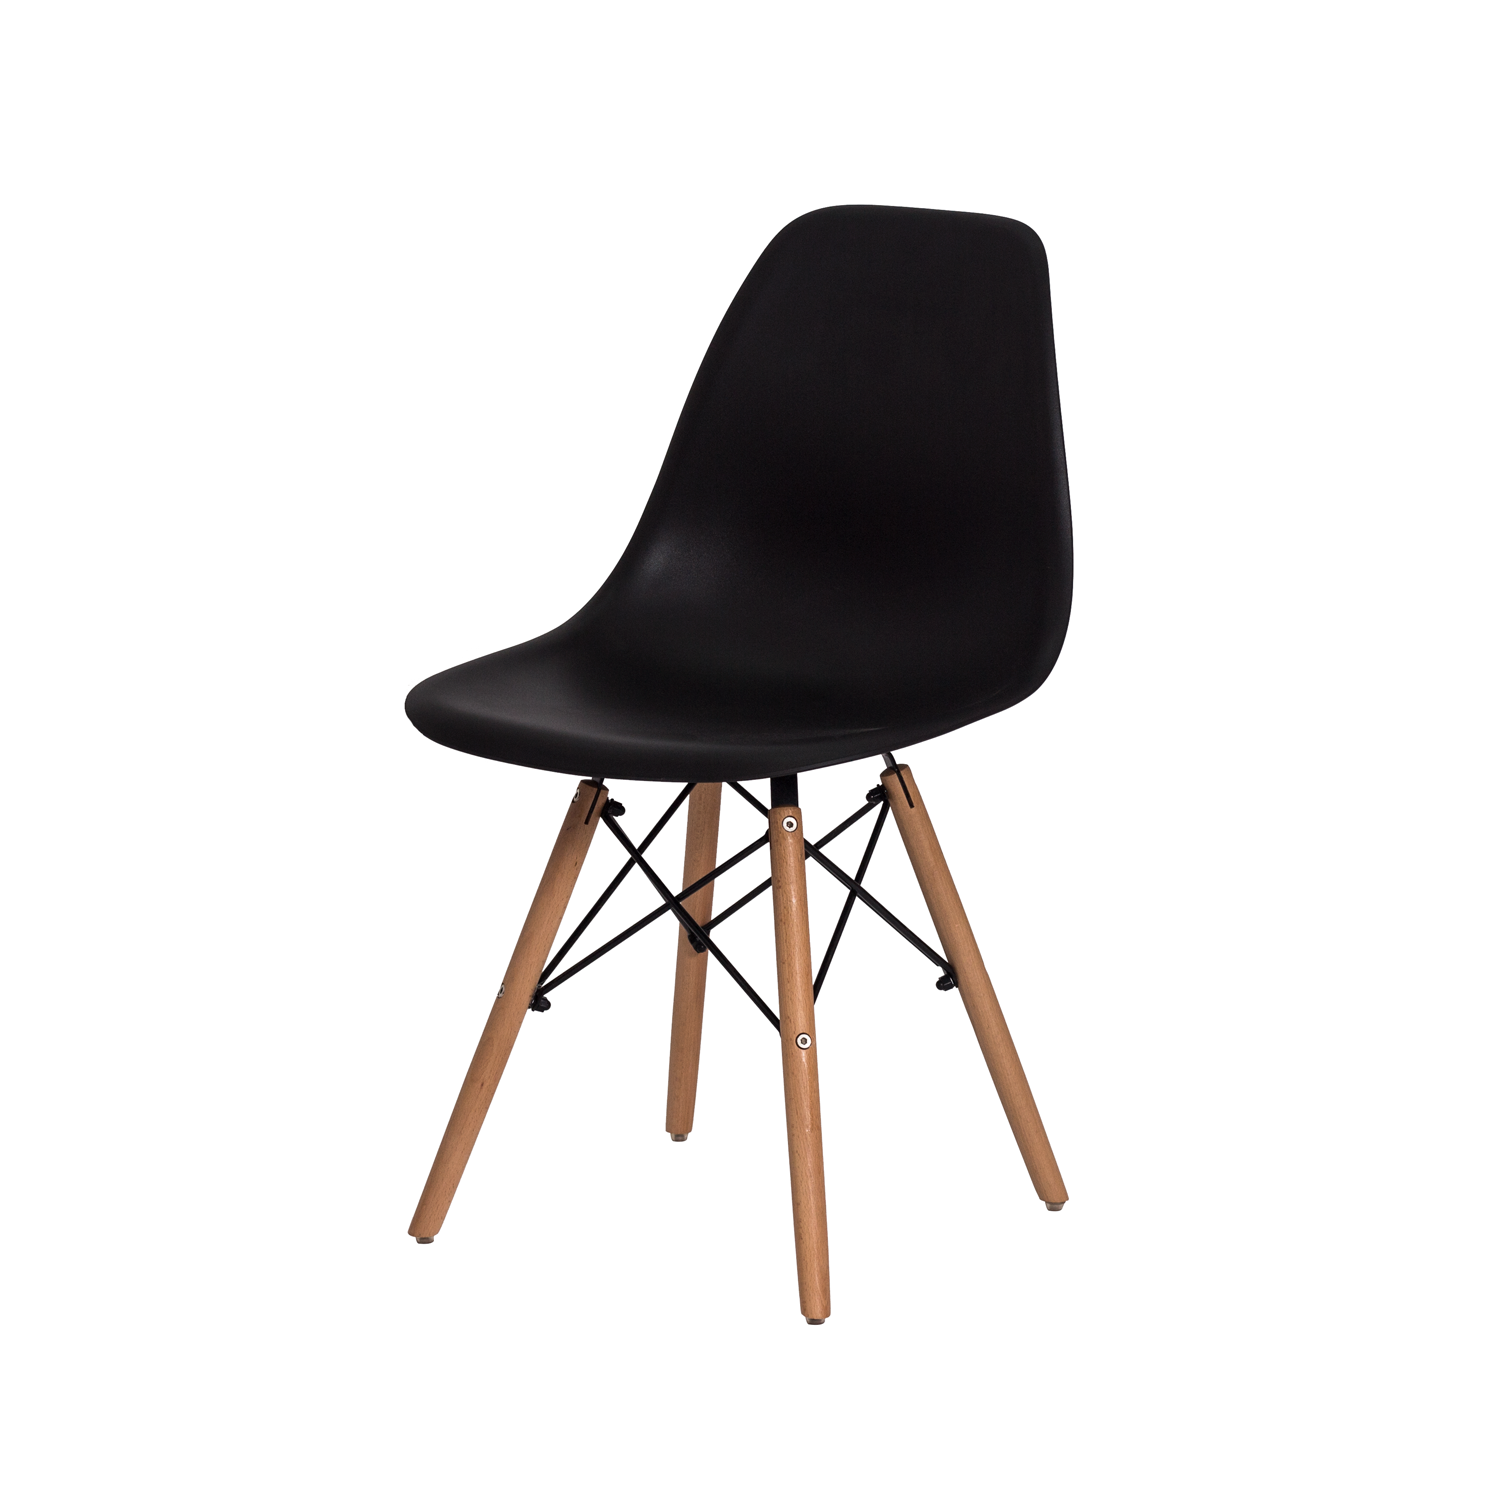 Kit 4 Cadeiras Charles Eames Eiffel - Preta Kza Bela - 2